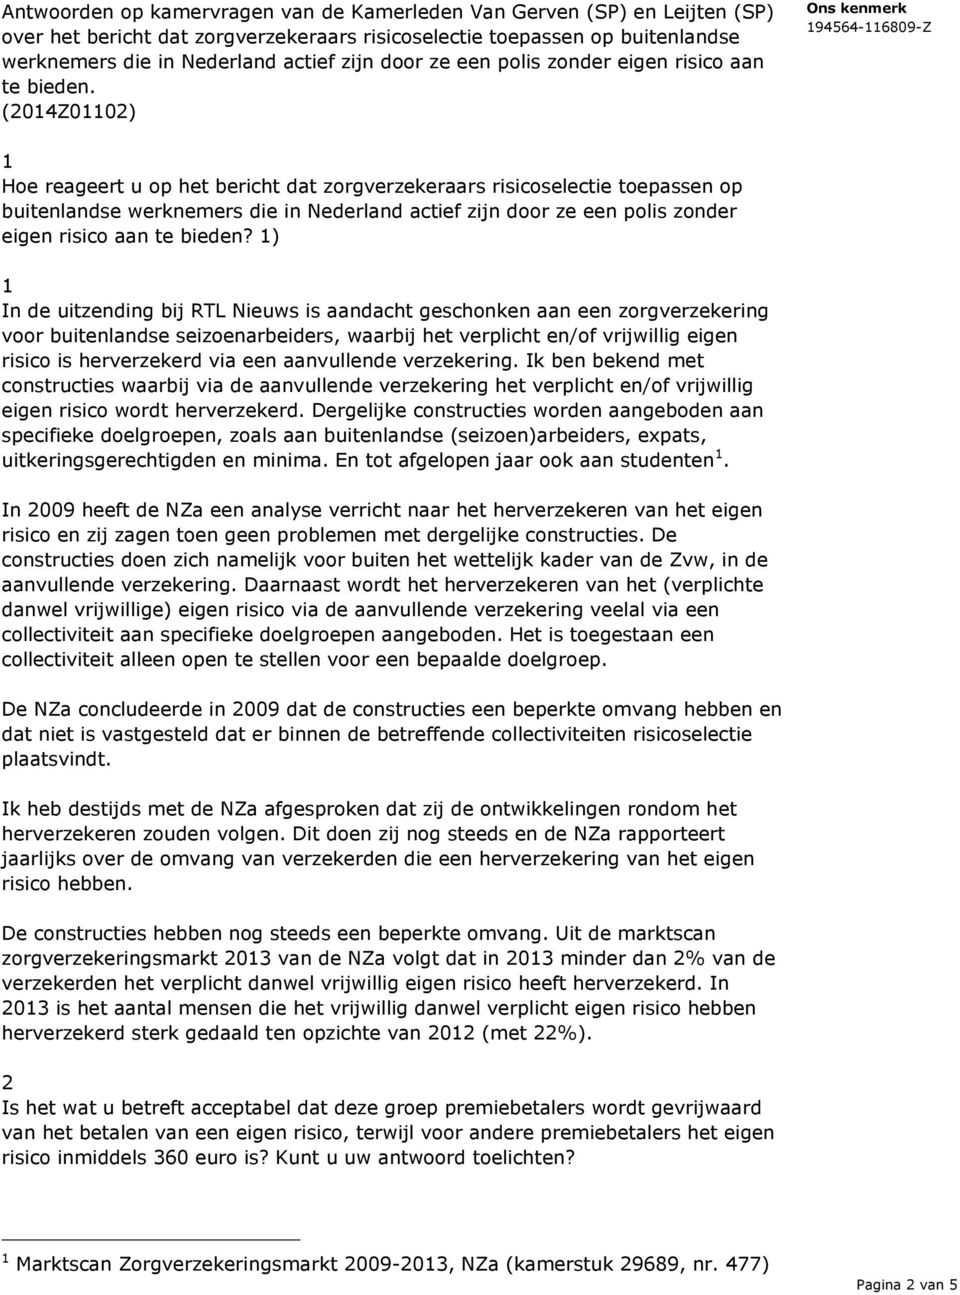 (204Z002) Hoe reageert u op het bericht dat zorgverzekeraars risicoselectie toepassen op buitenlandse werknemers die in Nederland actief zijn door ze een polis zonder eigen risico aan te bieden?